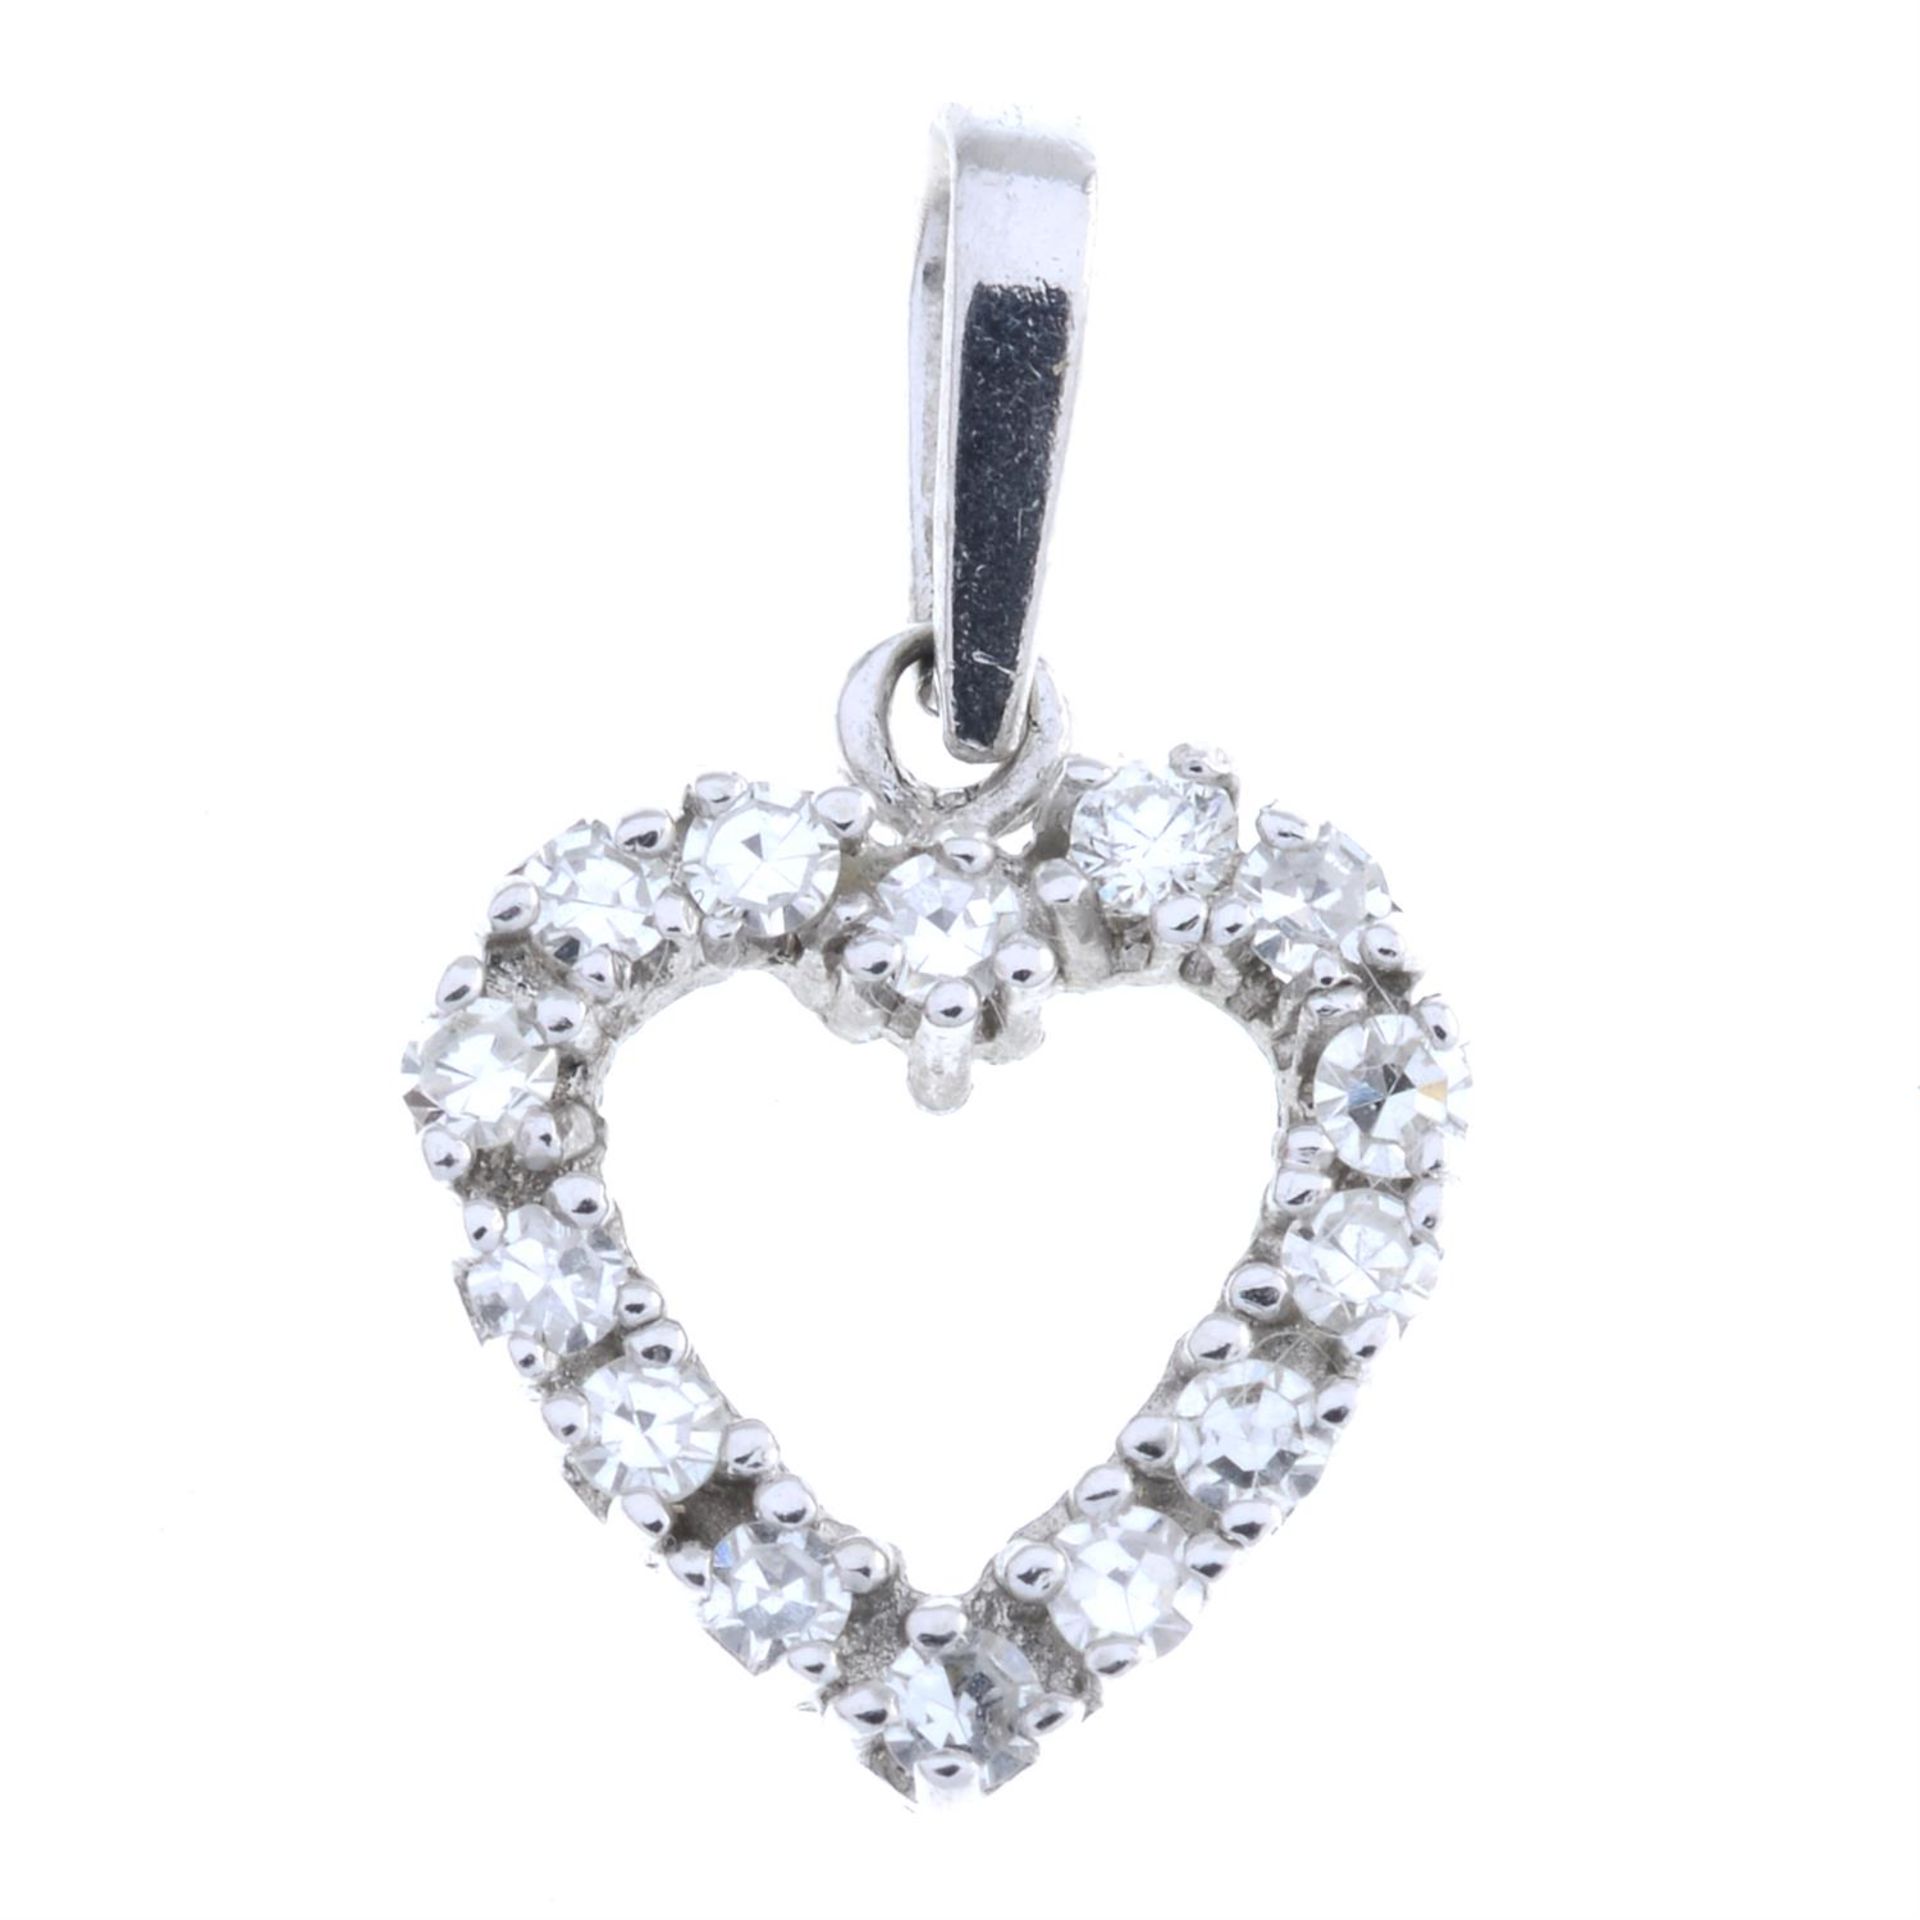 Diamond heart-shape pendant